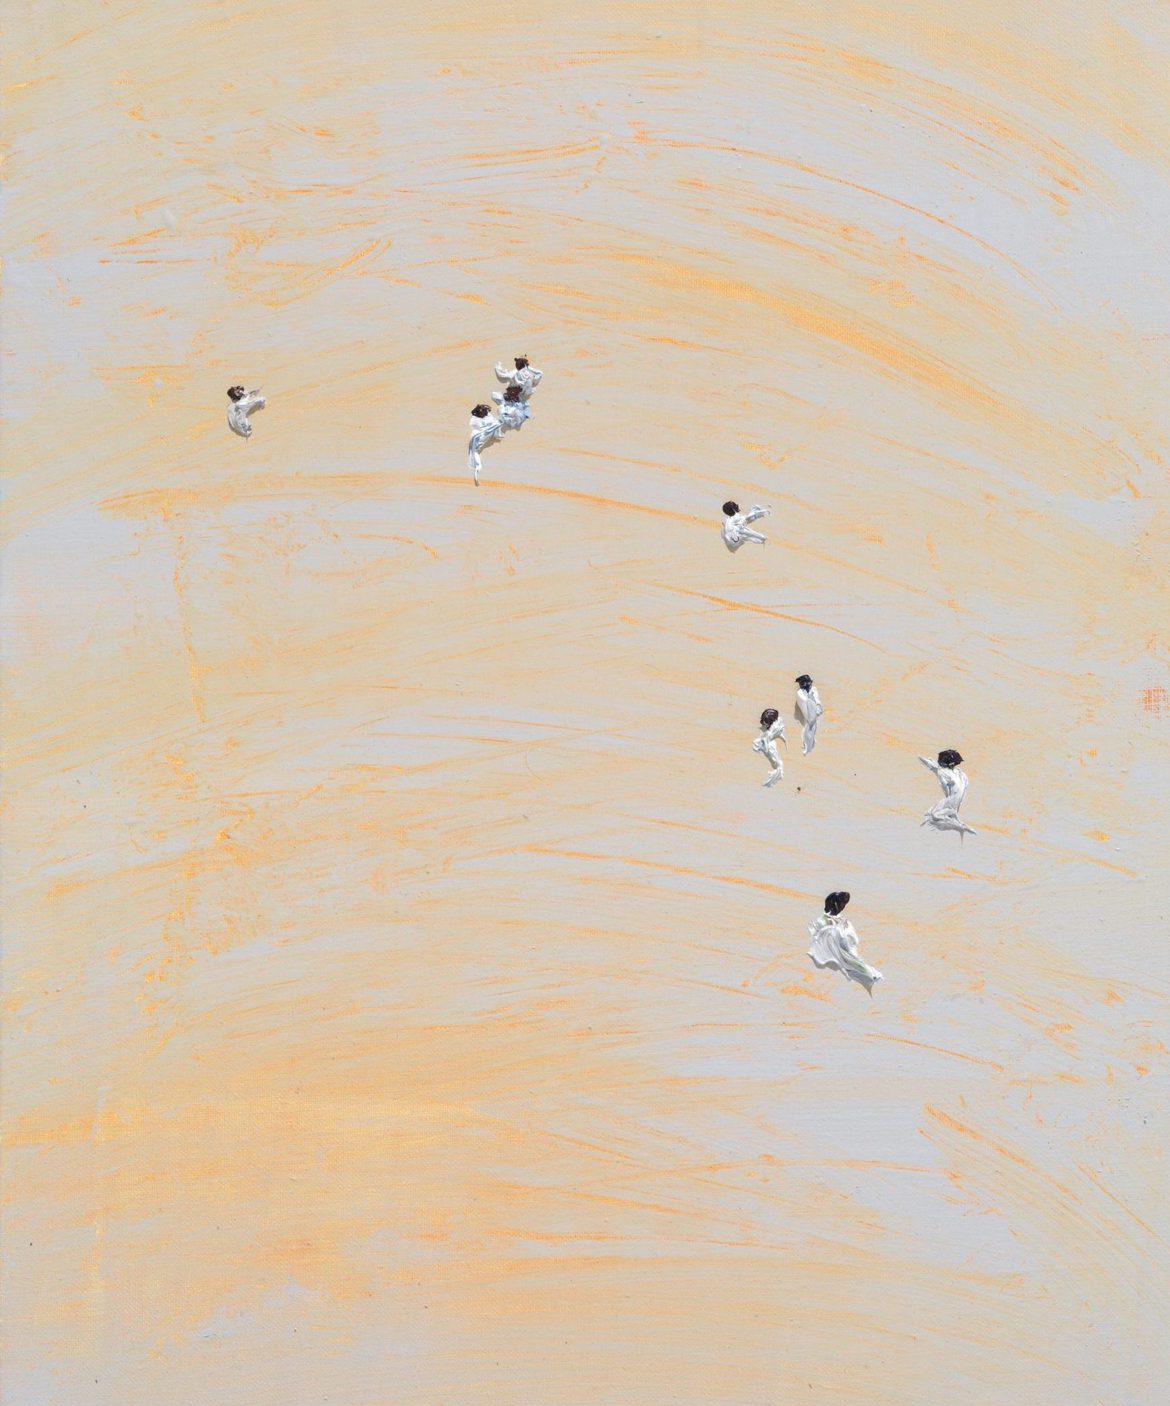 Clemens Krauss, ‘Zellen / Cells’, 2019, oil on canvas, 60 x 50 cm